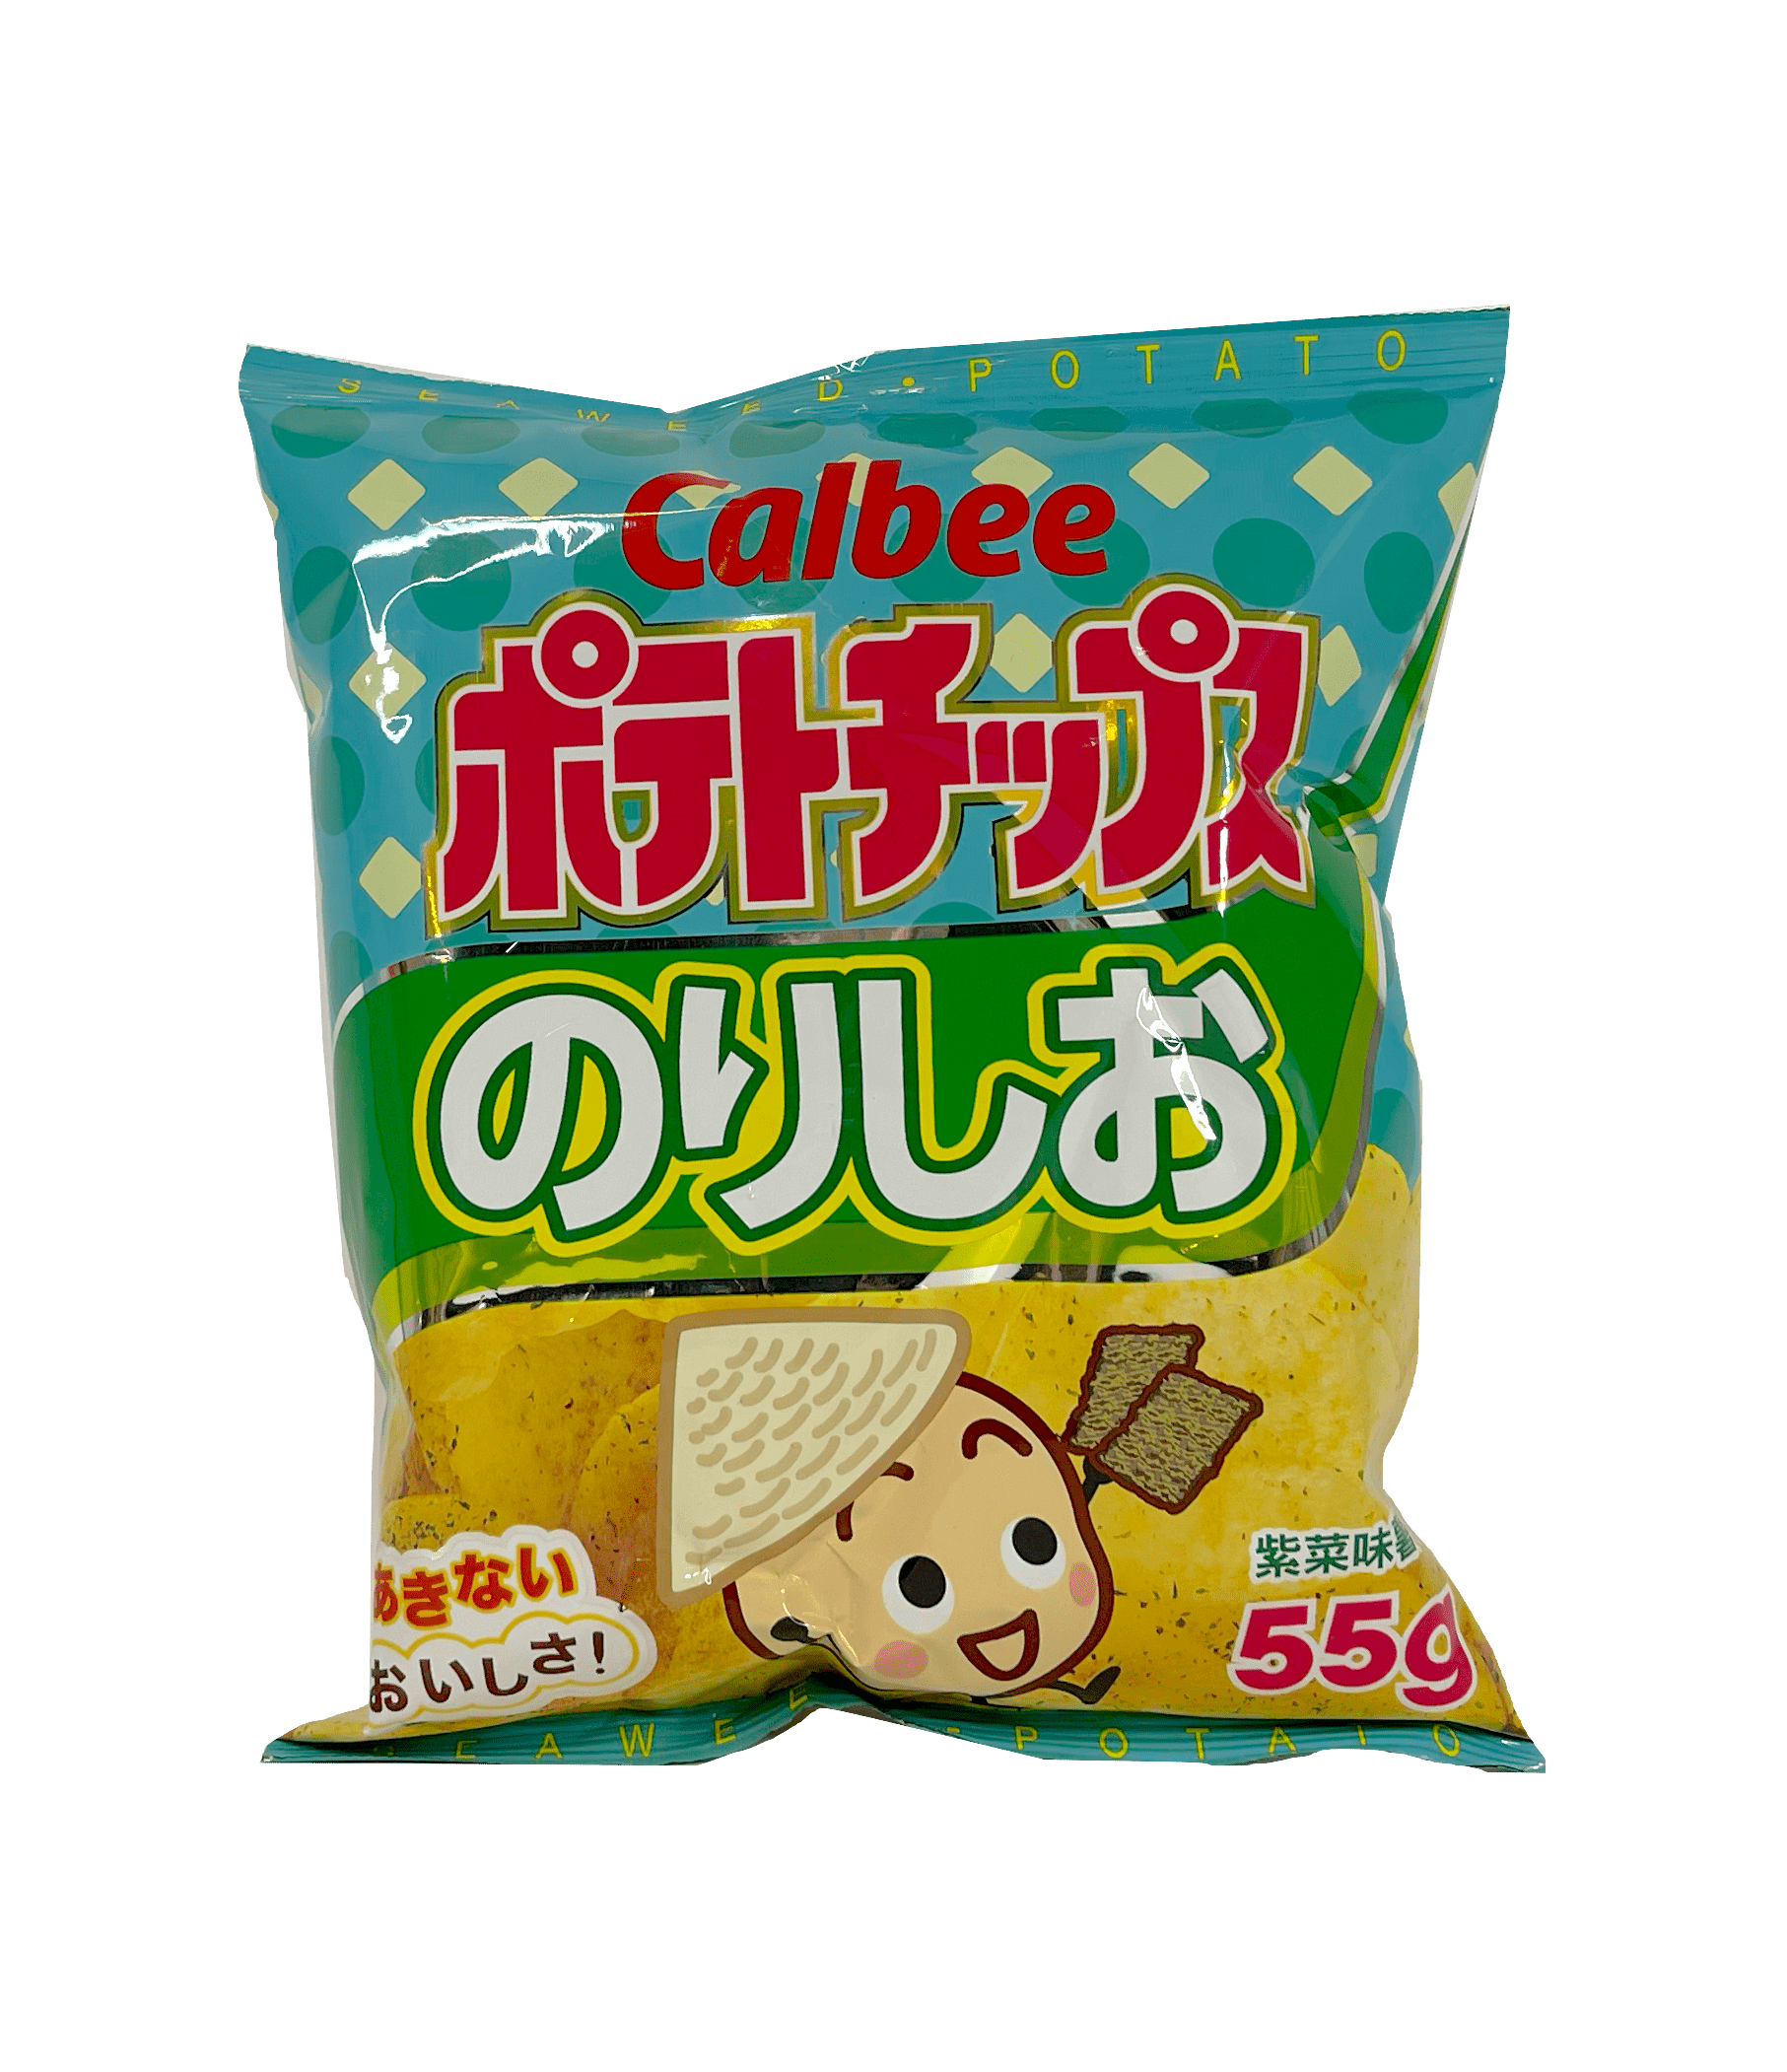 保质期:2022.08.04 薯片 紫菜味 55g Calbee 中国